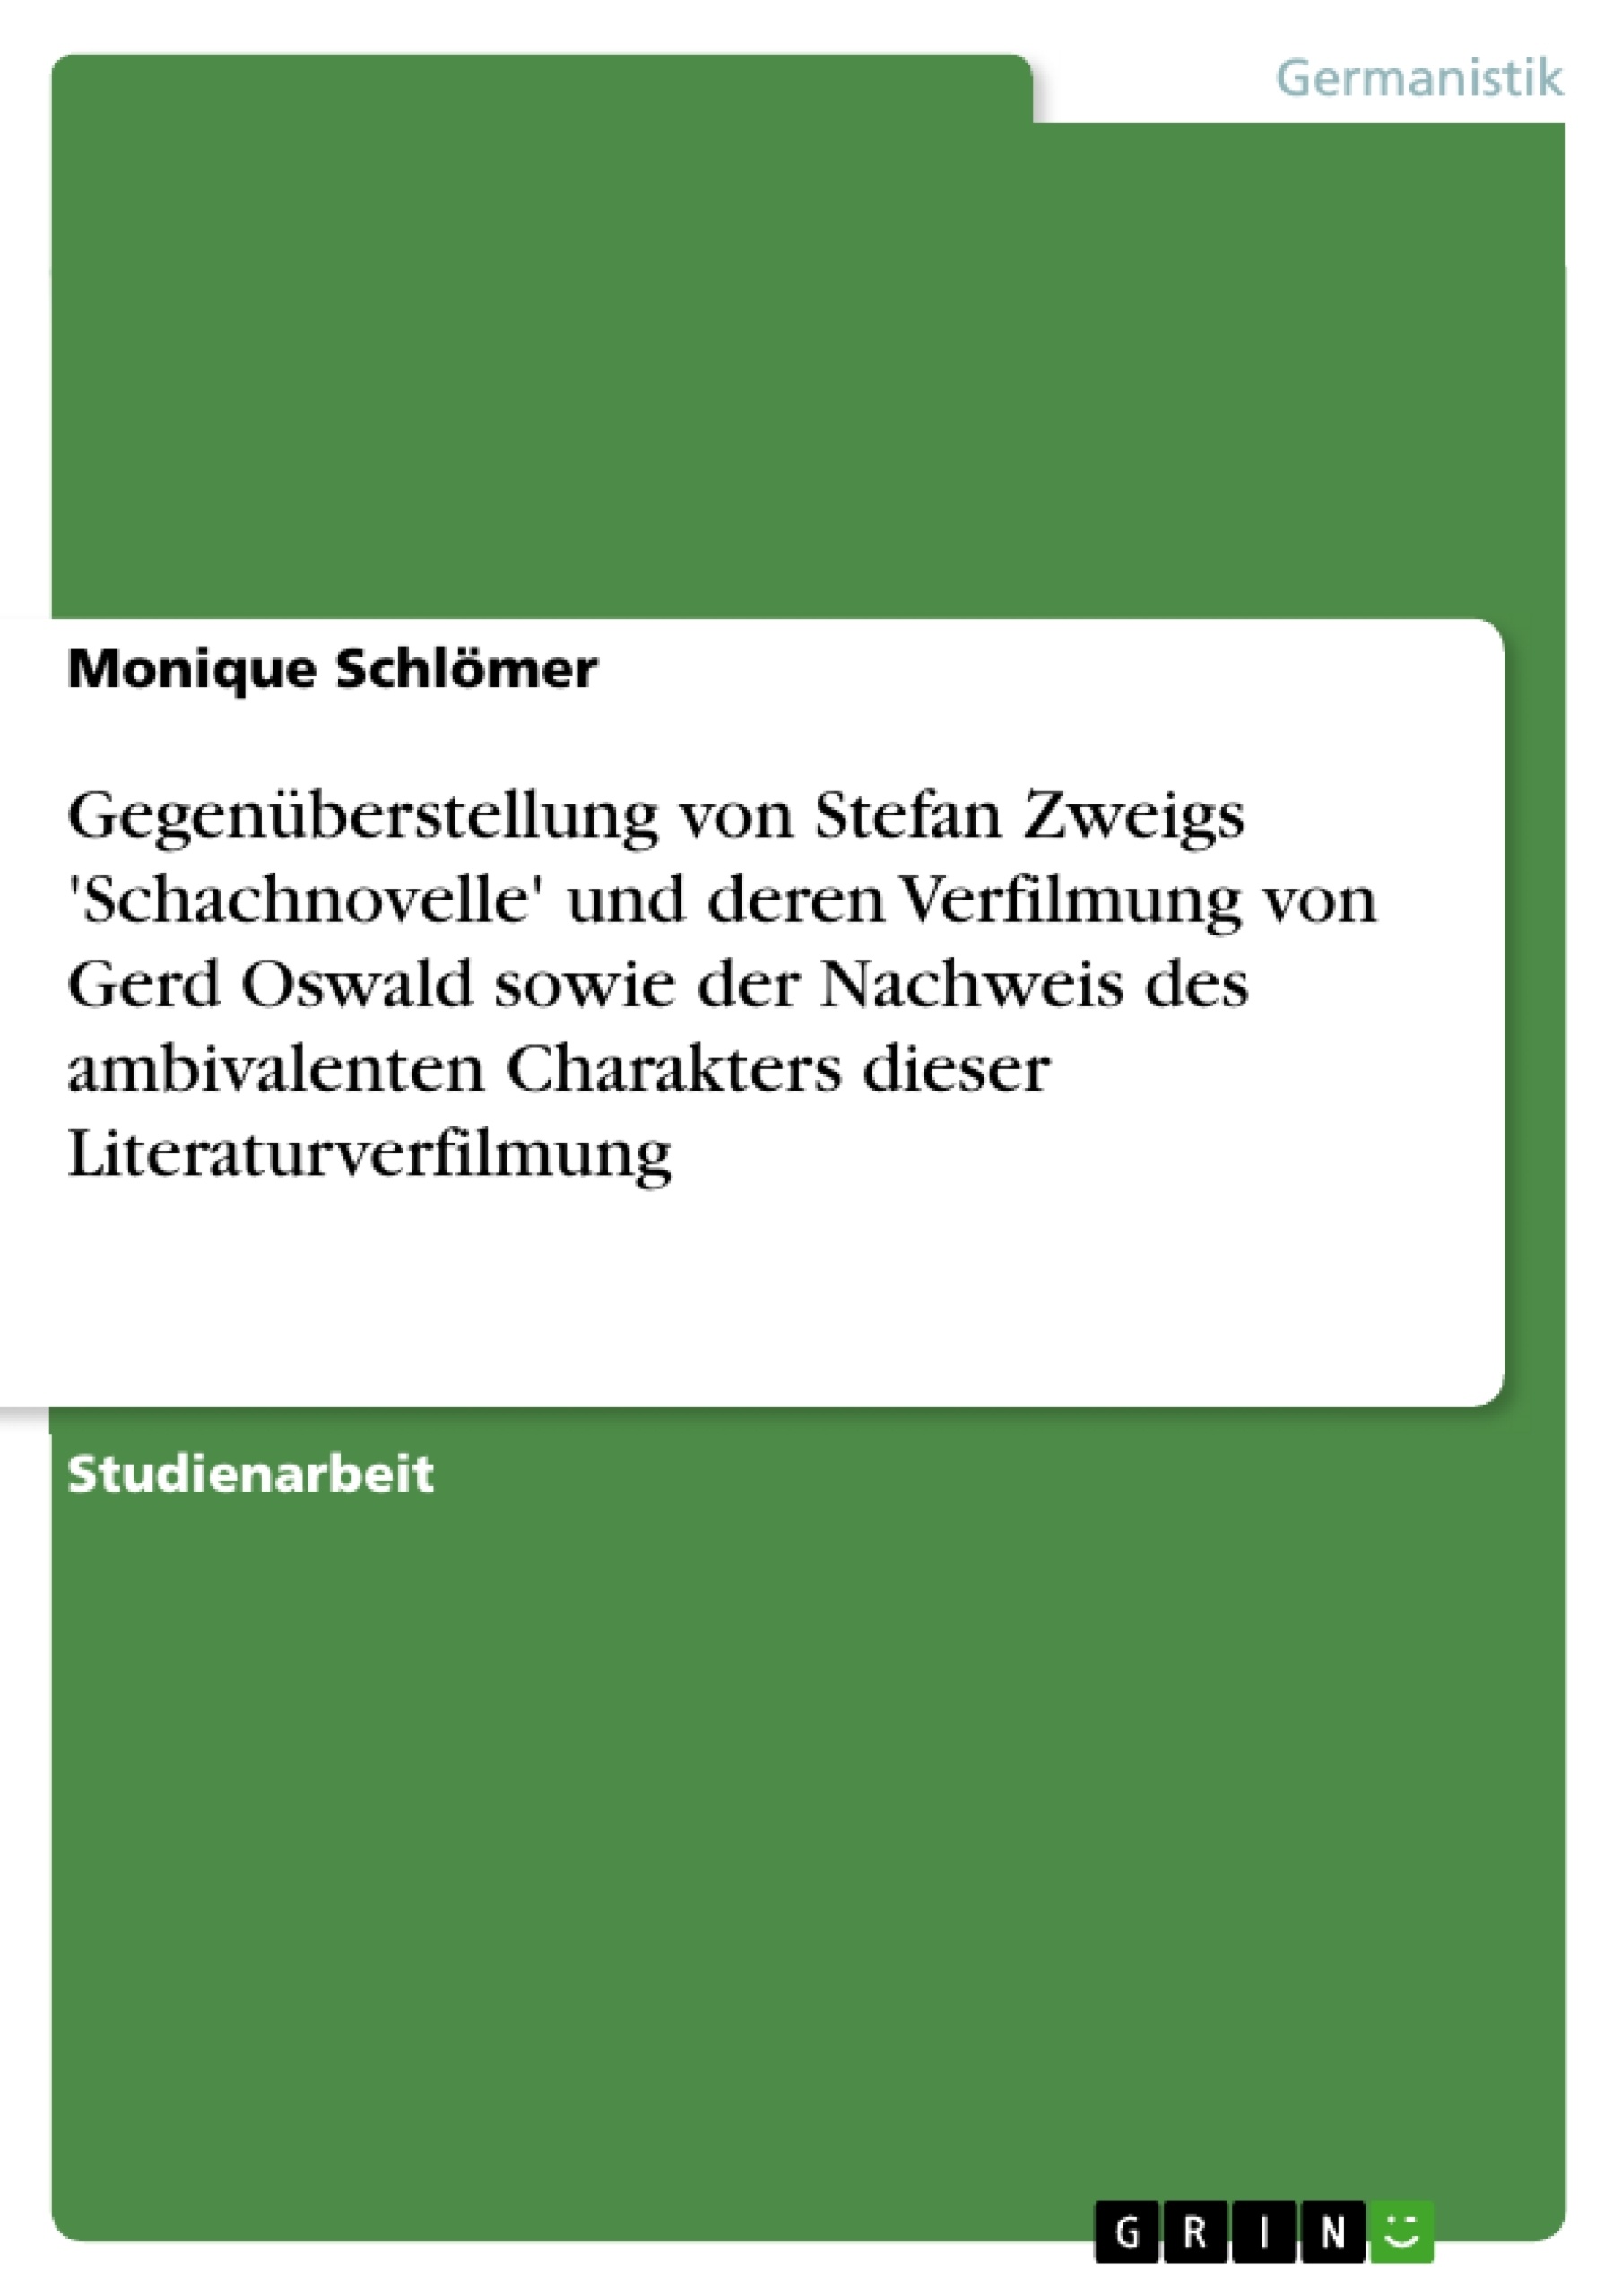 Título: Gegenüberstellung von Stefan Zweigs 'Schachnovelle' und deren Verfilmung von Gerd Oswald sowie der Nachweis des ambivalenten Charakters dieser Literaturverfilmung